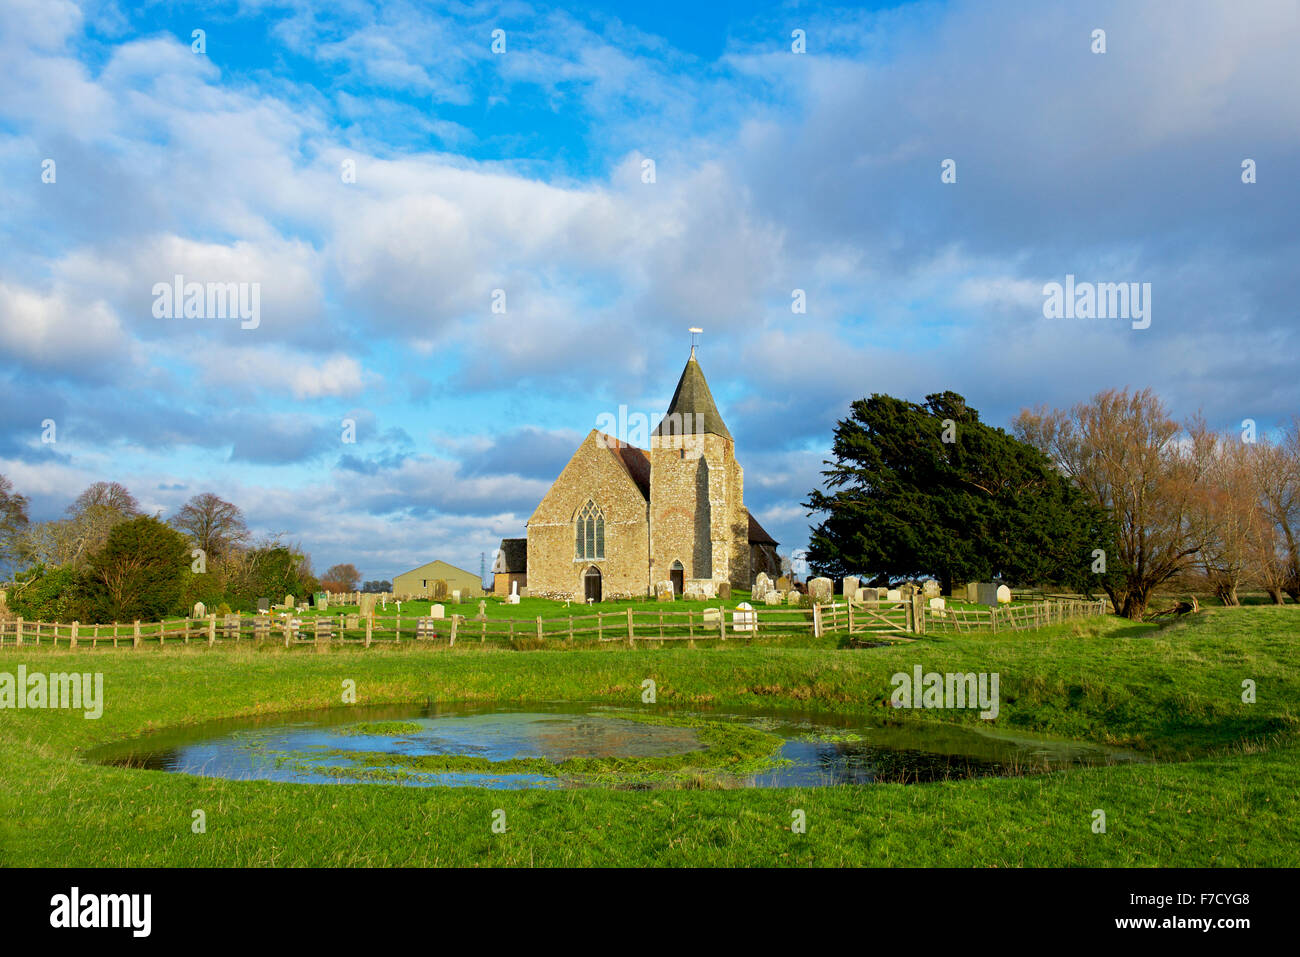 St Clement's Church, Old Romney, Romney Marsh, Kent, Stock Photo